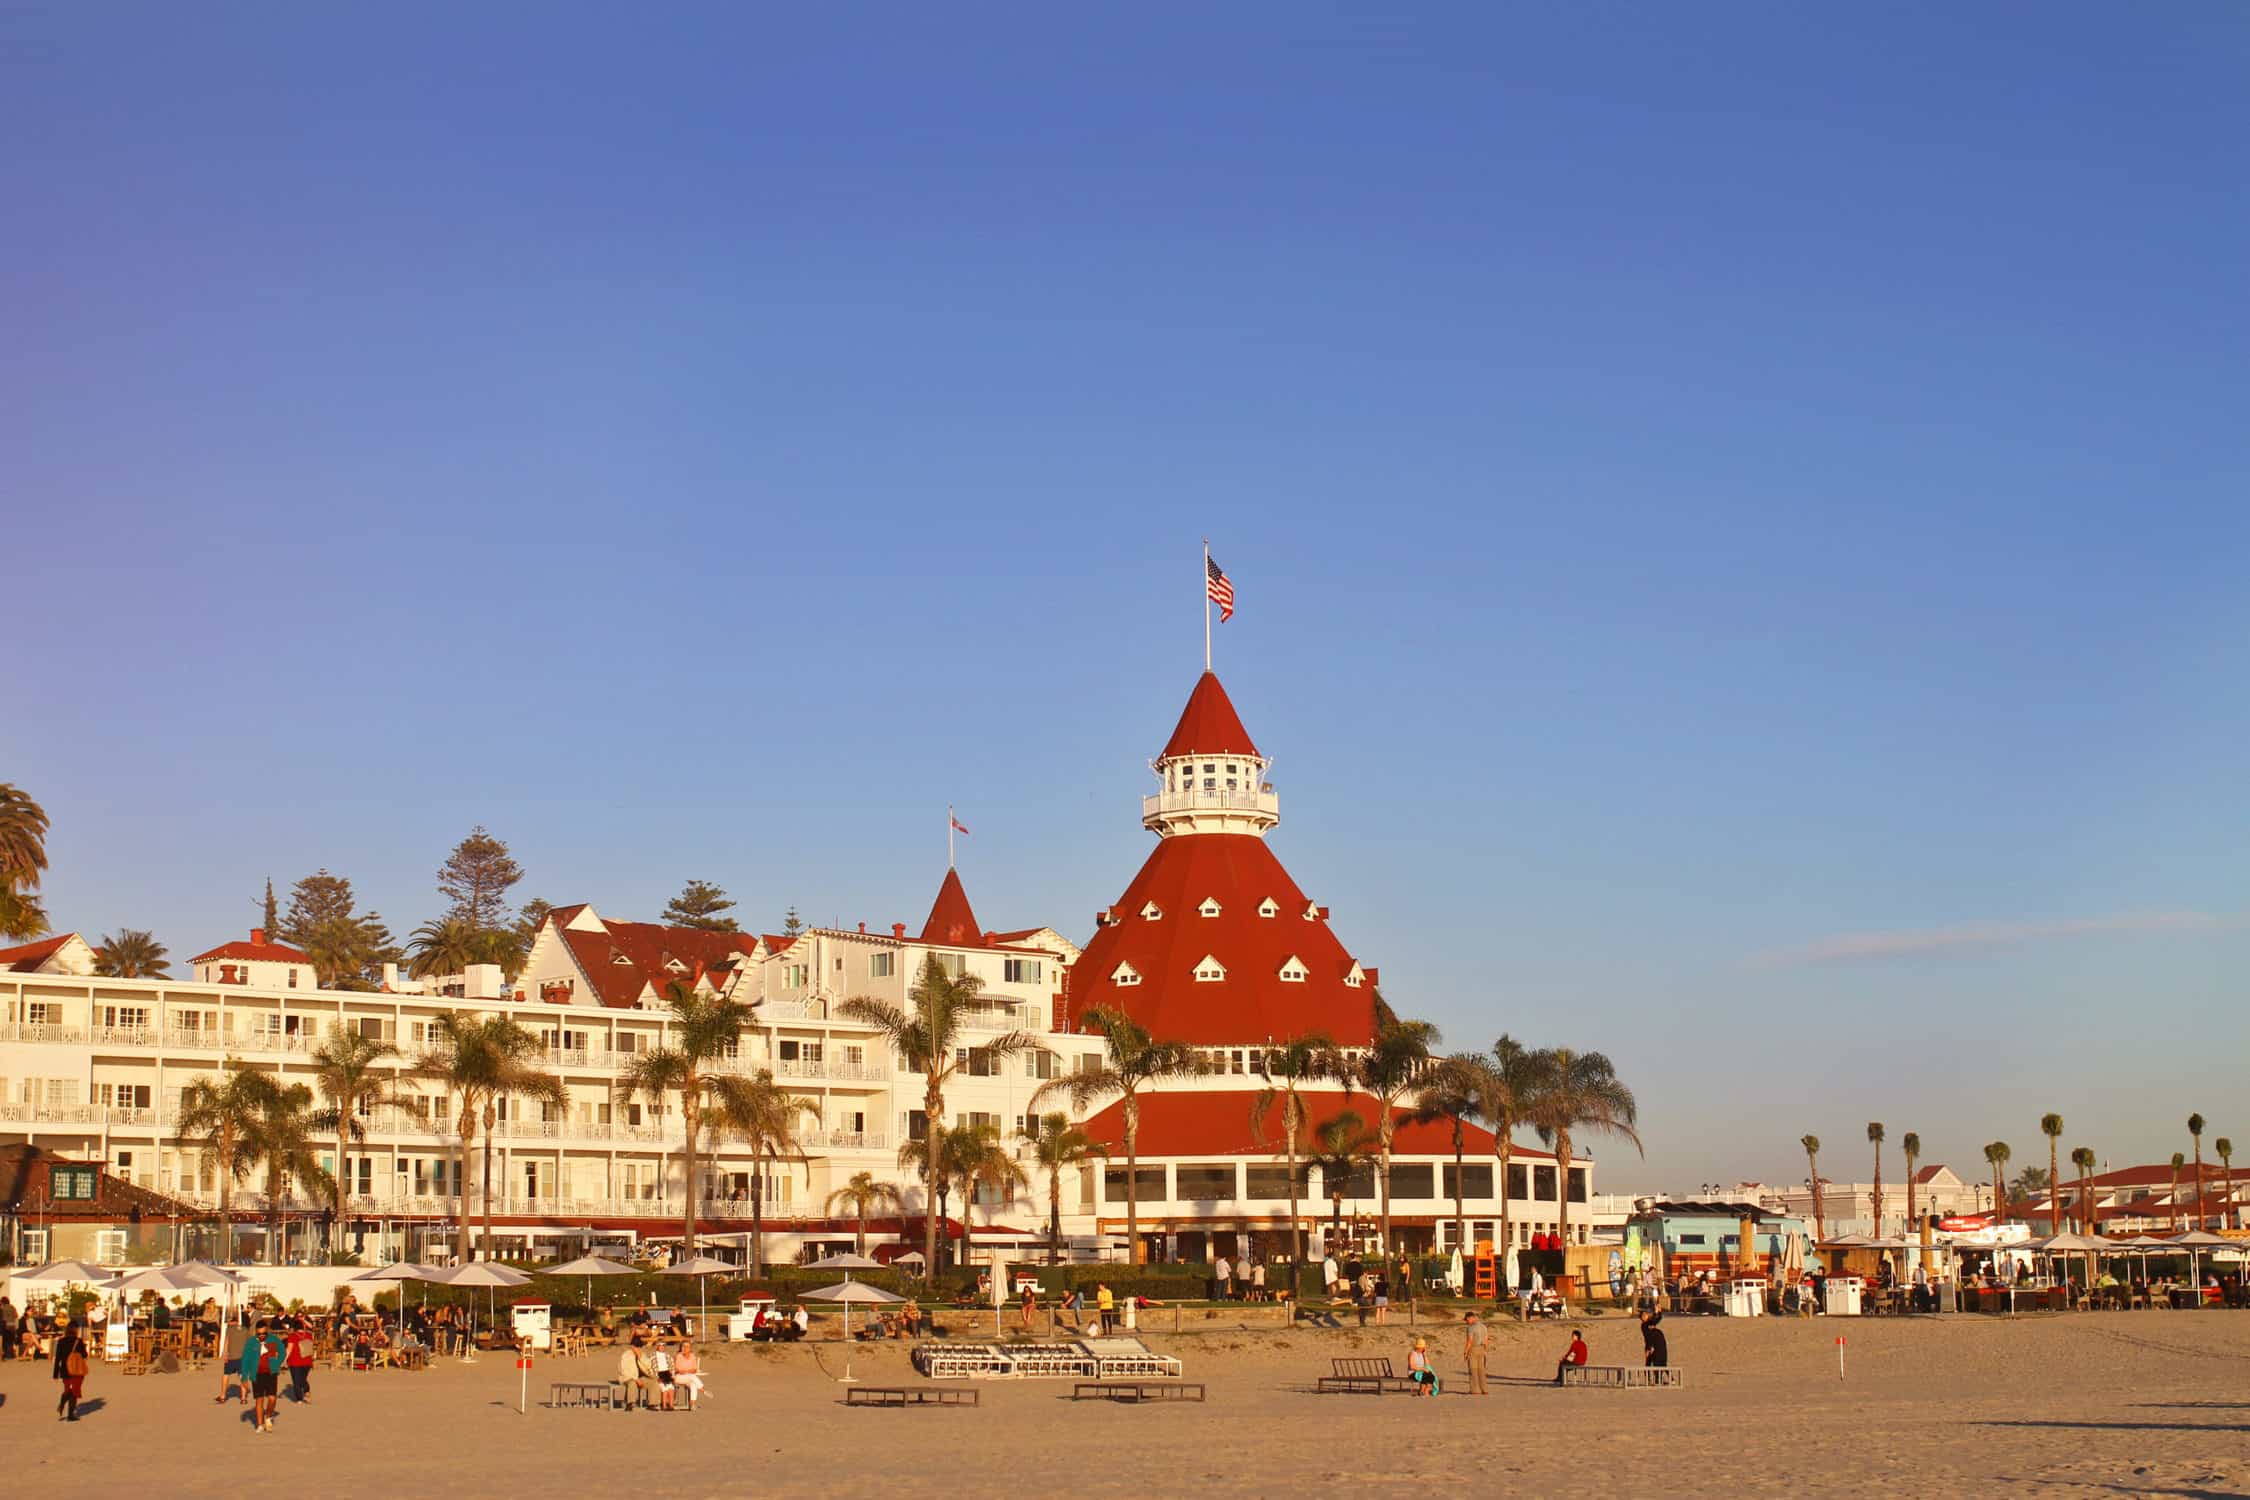 family spring break destination - San Diego, CA (Hotel del Coronado)